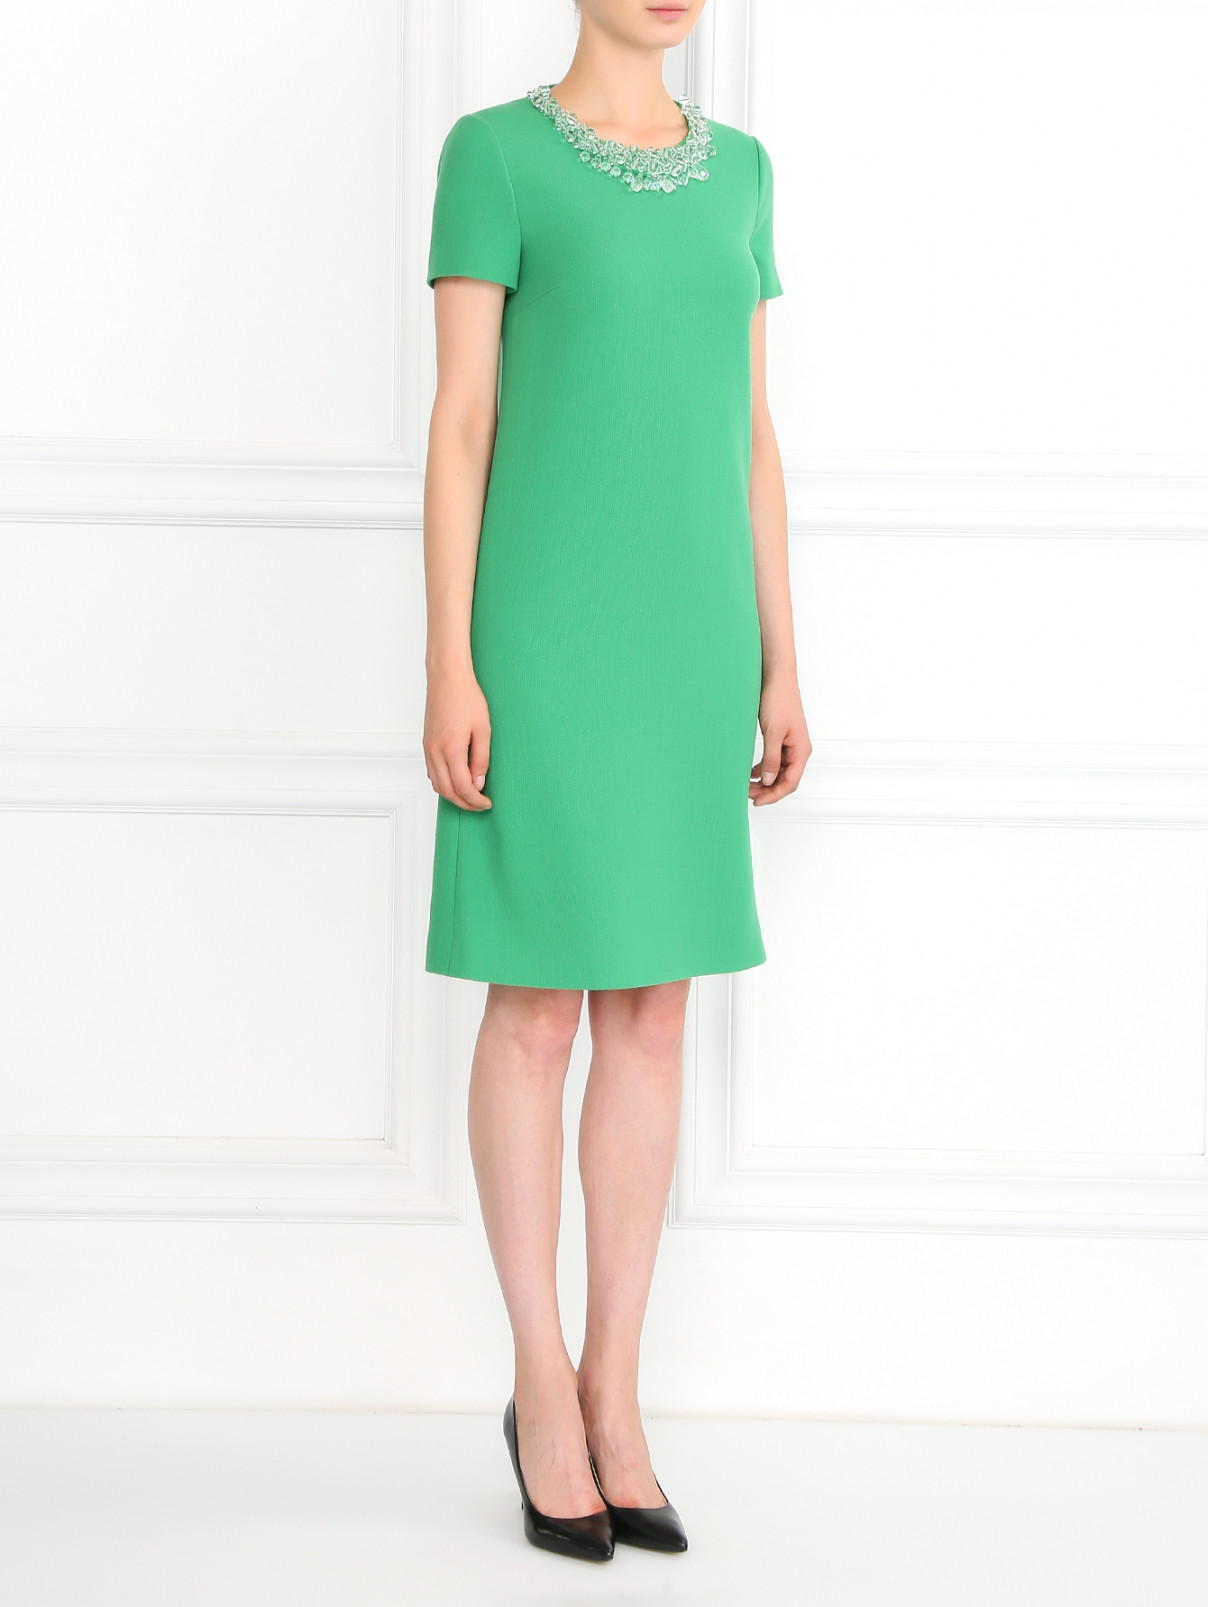 Платье прямого фасона из шерсти декорированное кристаллами Moschino Boutique  –  Модель Общий вид  – Цвет:  Зеленый